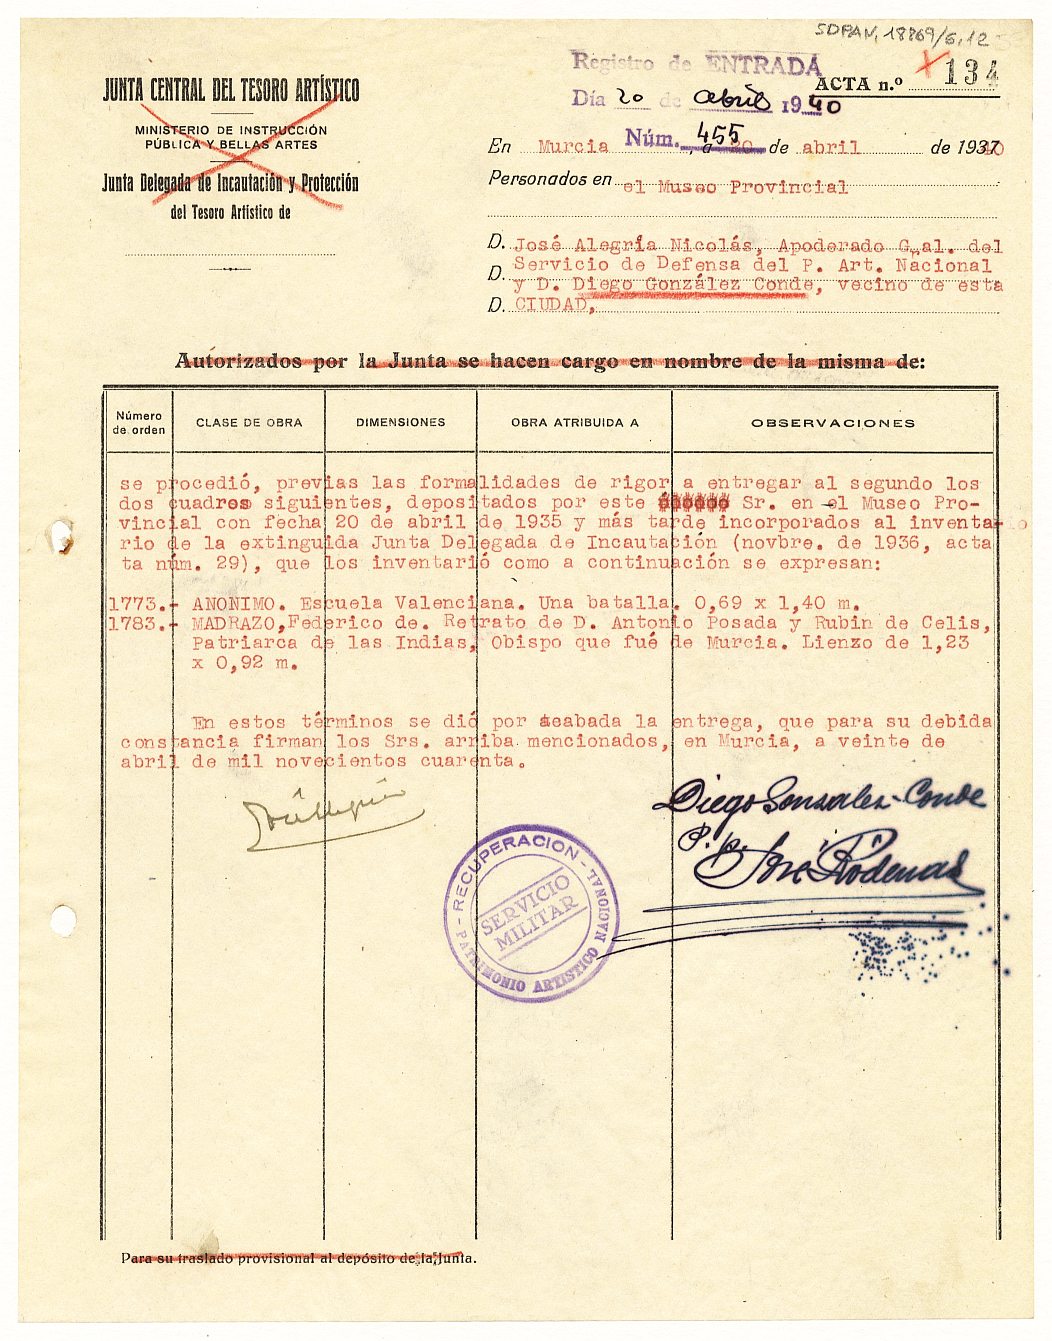 Acta de entrega nº 134 de dos cuadros a su propietario, Diego González-Conde.